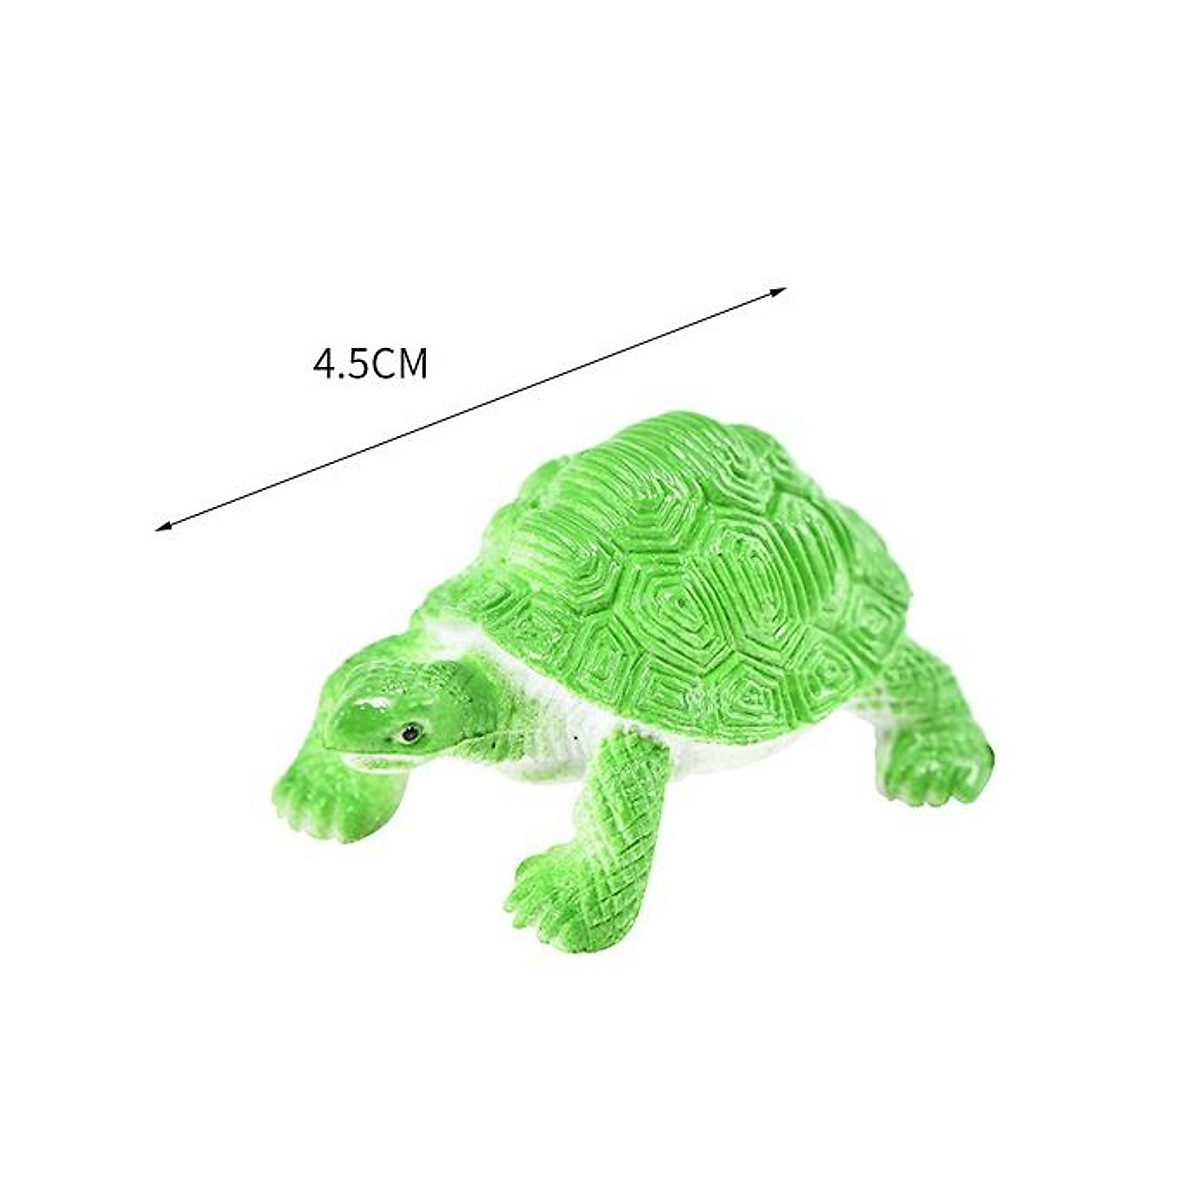 Mua Đồ chơi 12 con Rùa Natural Turtle 5 cm mô hình đáng yêu bằng nhựa cứng  đặc nhiều màu sắc độc đáo cho bé tại Vacimall